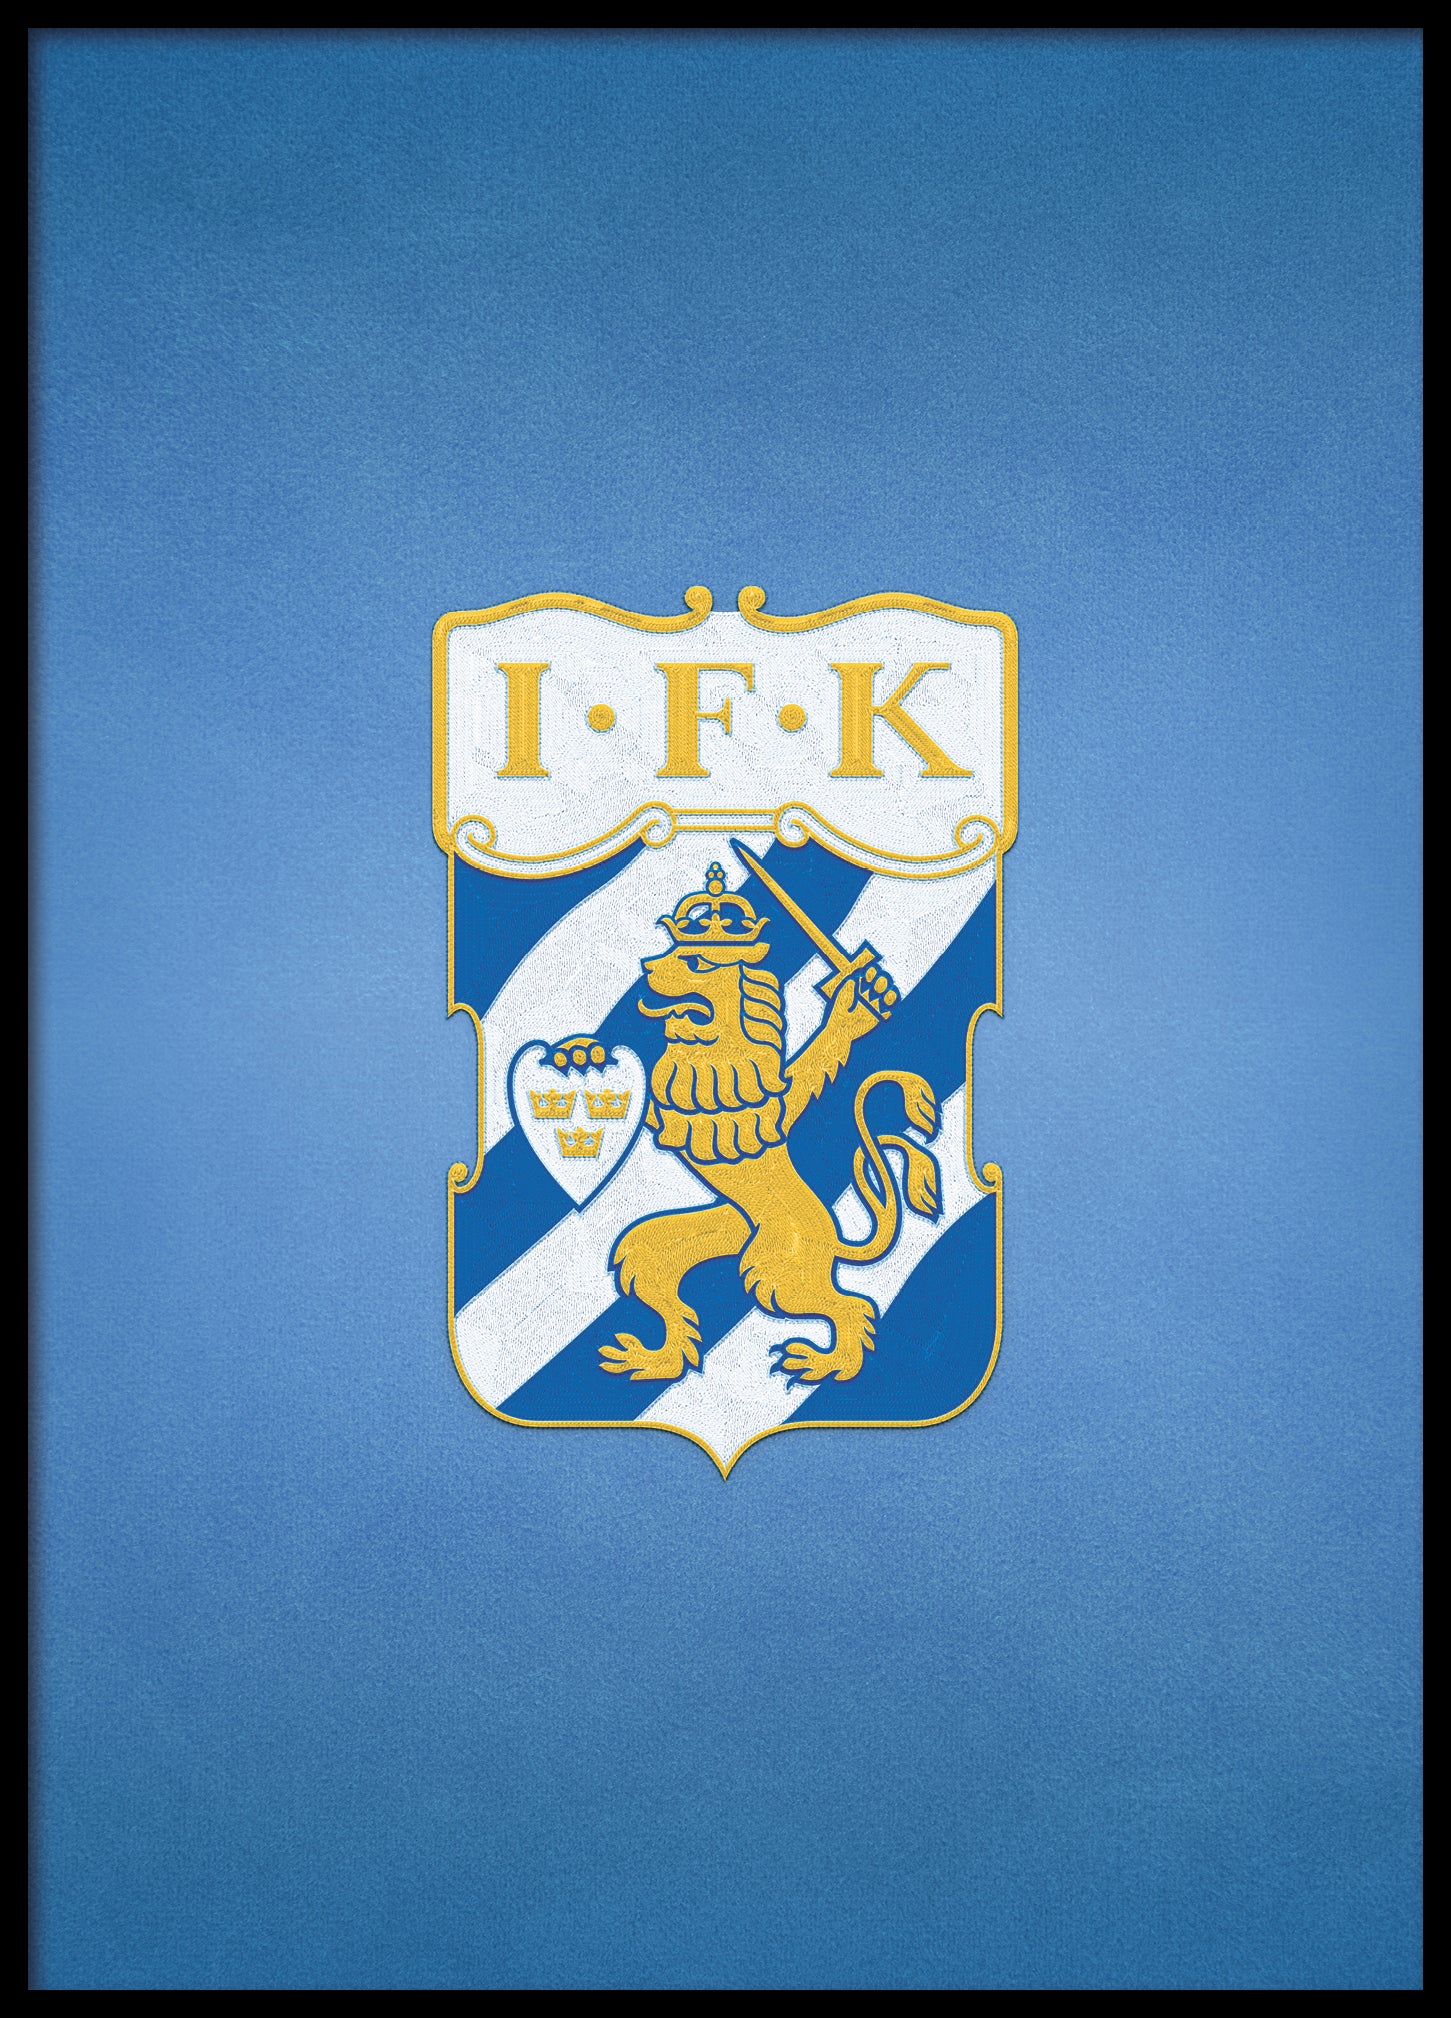 IFK Göteborg Emblem